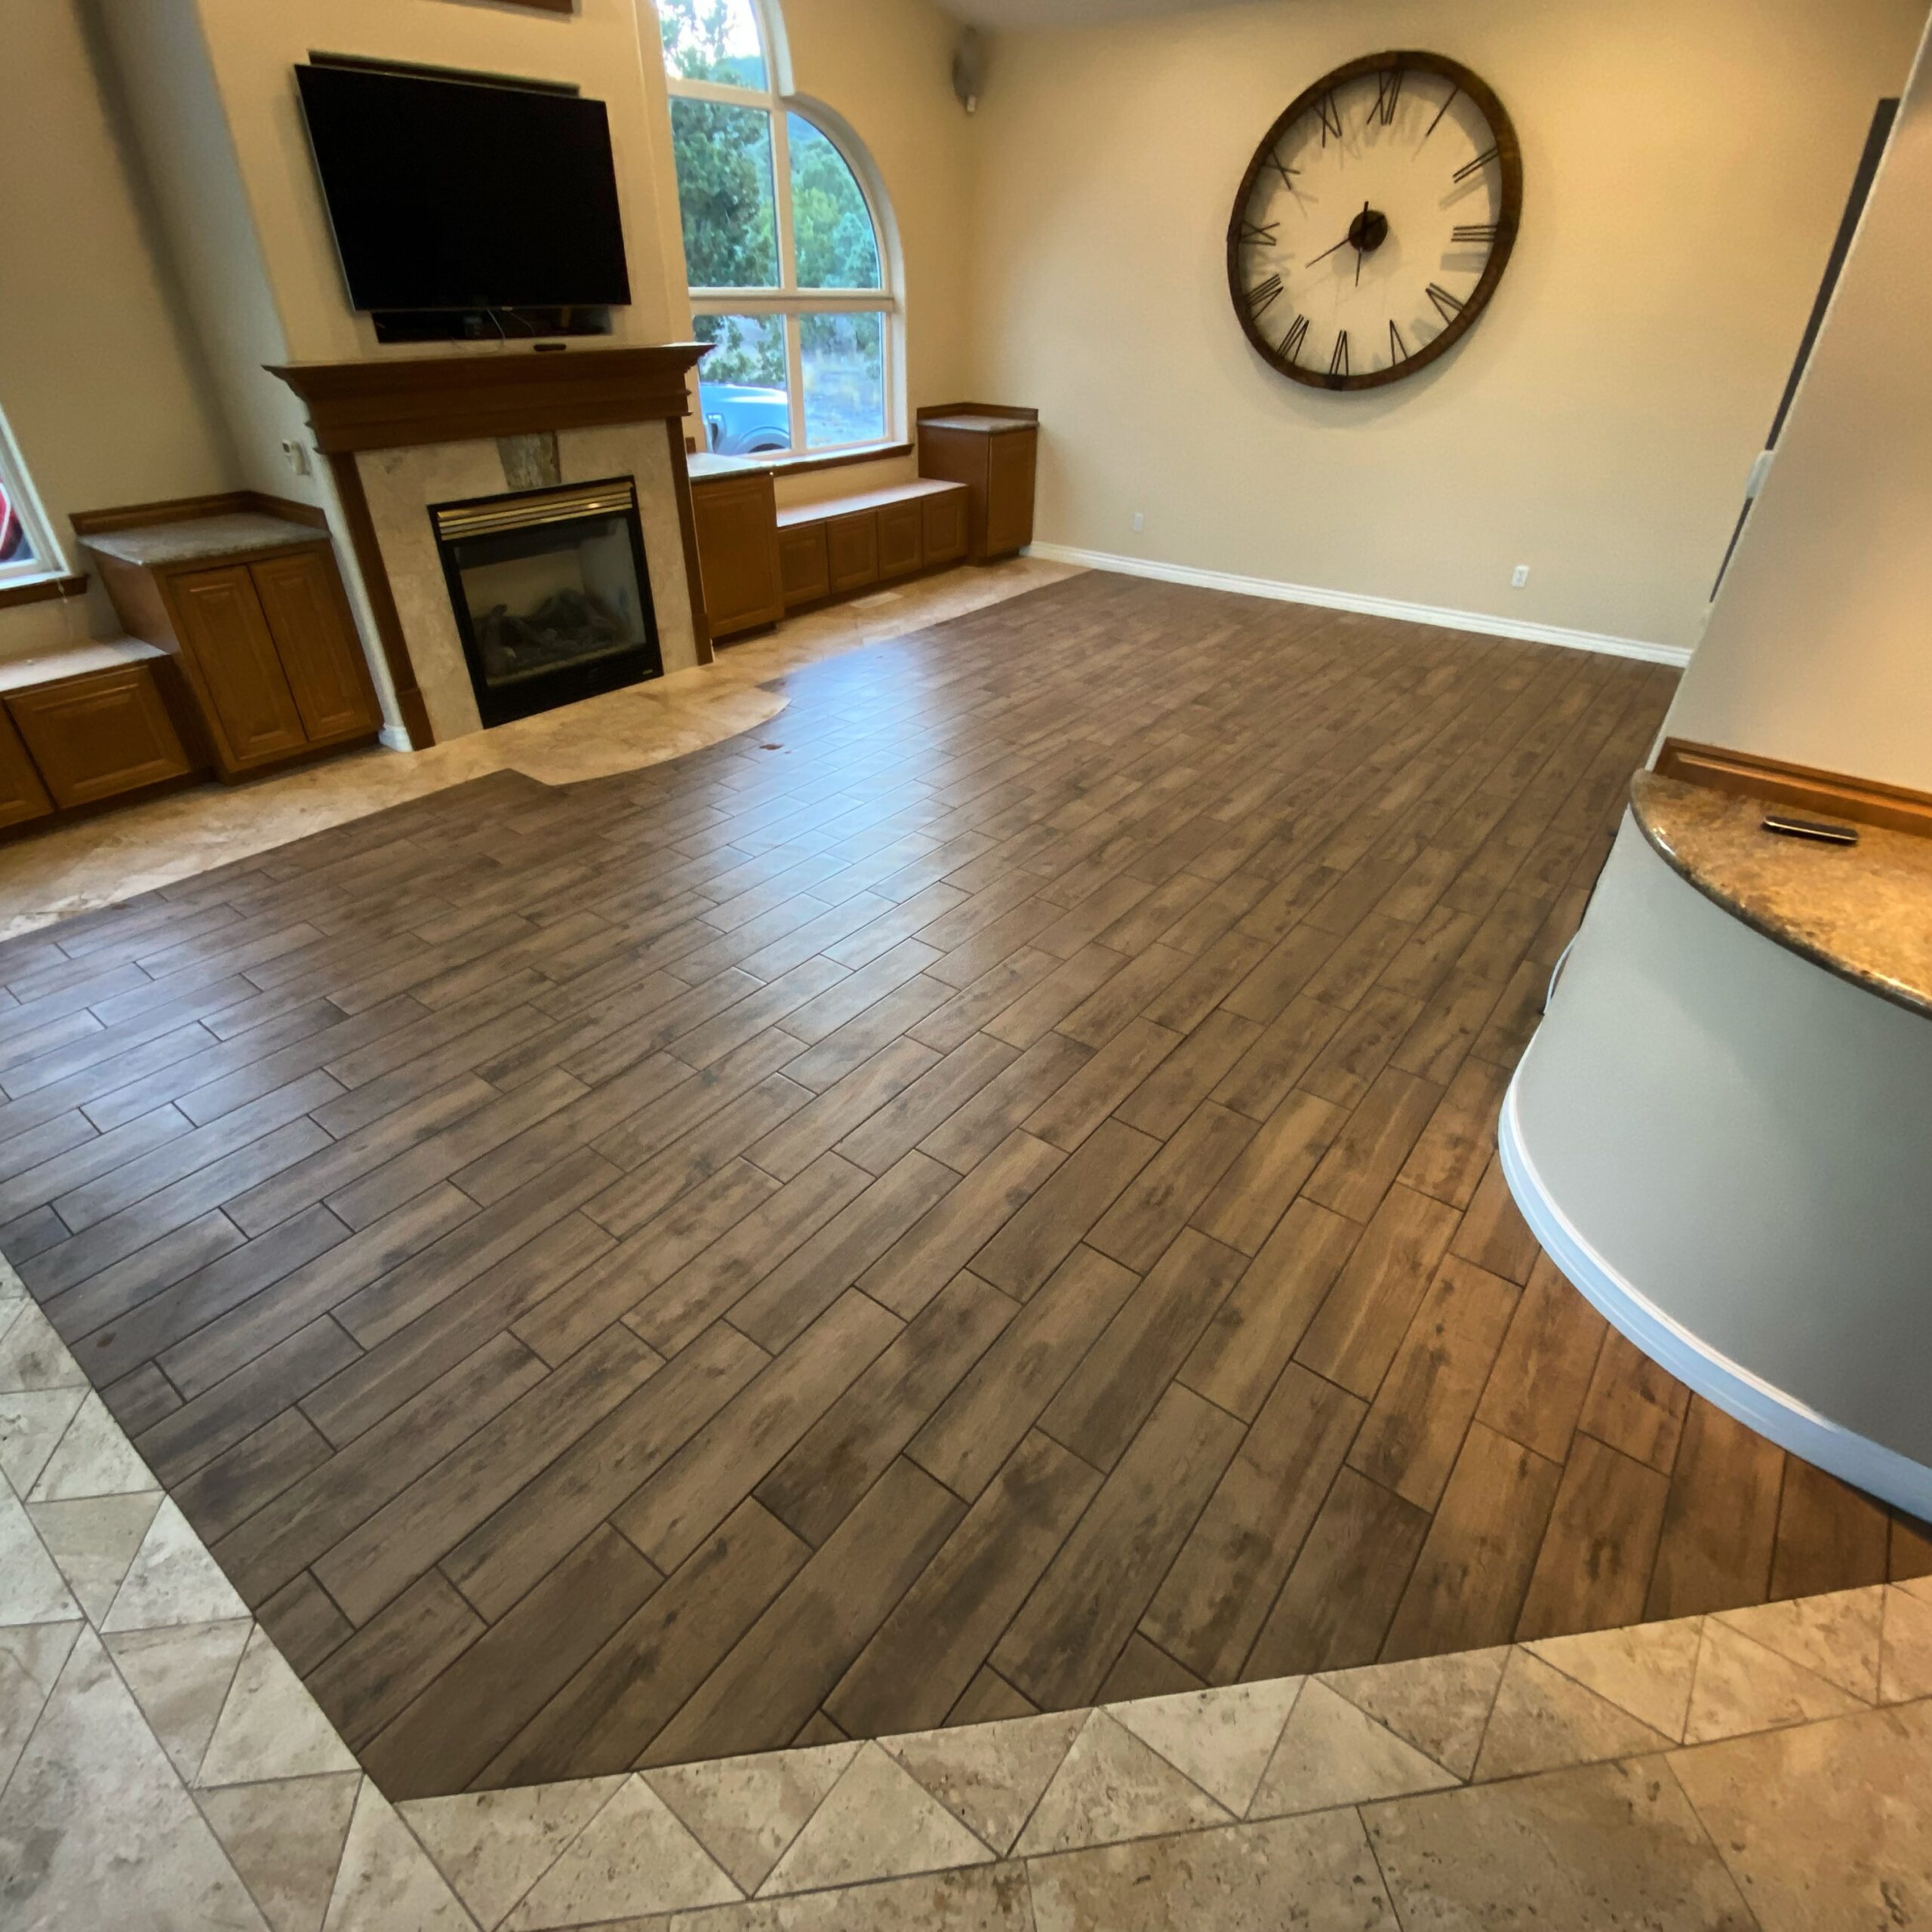 Brand new Hardwood flooring Blended with Tile flooring